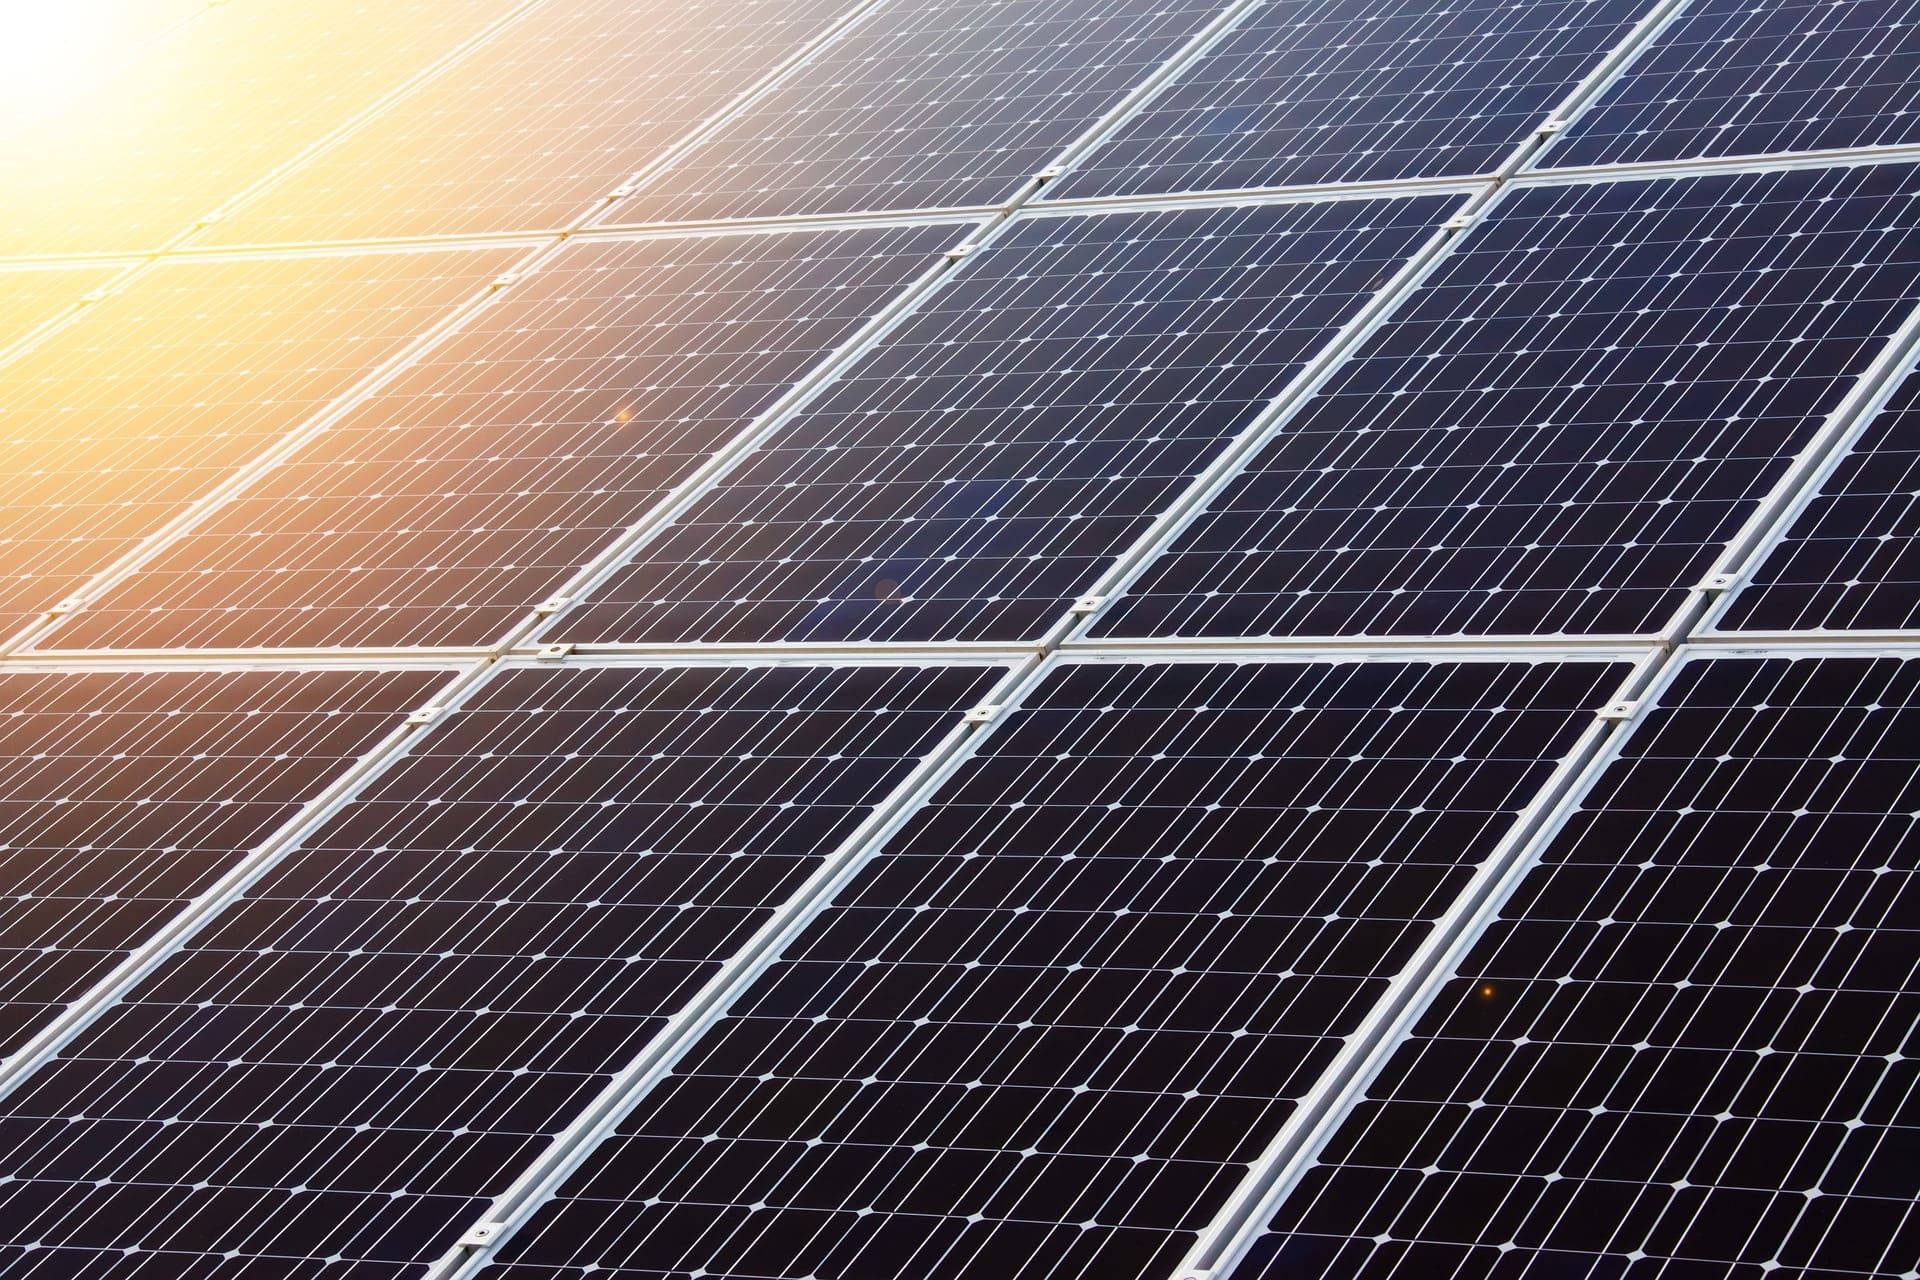 Solarstrom vom eigenen Dach: Was müssen Hausbesitzer rechtlich beachten?